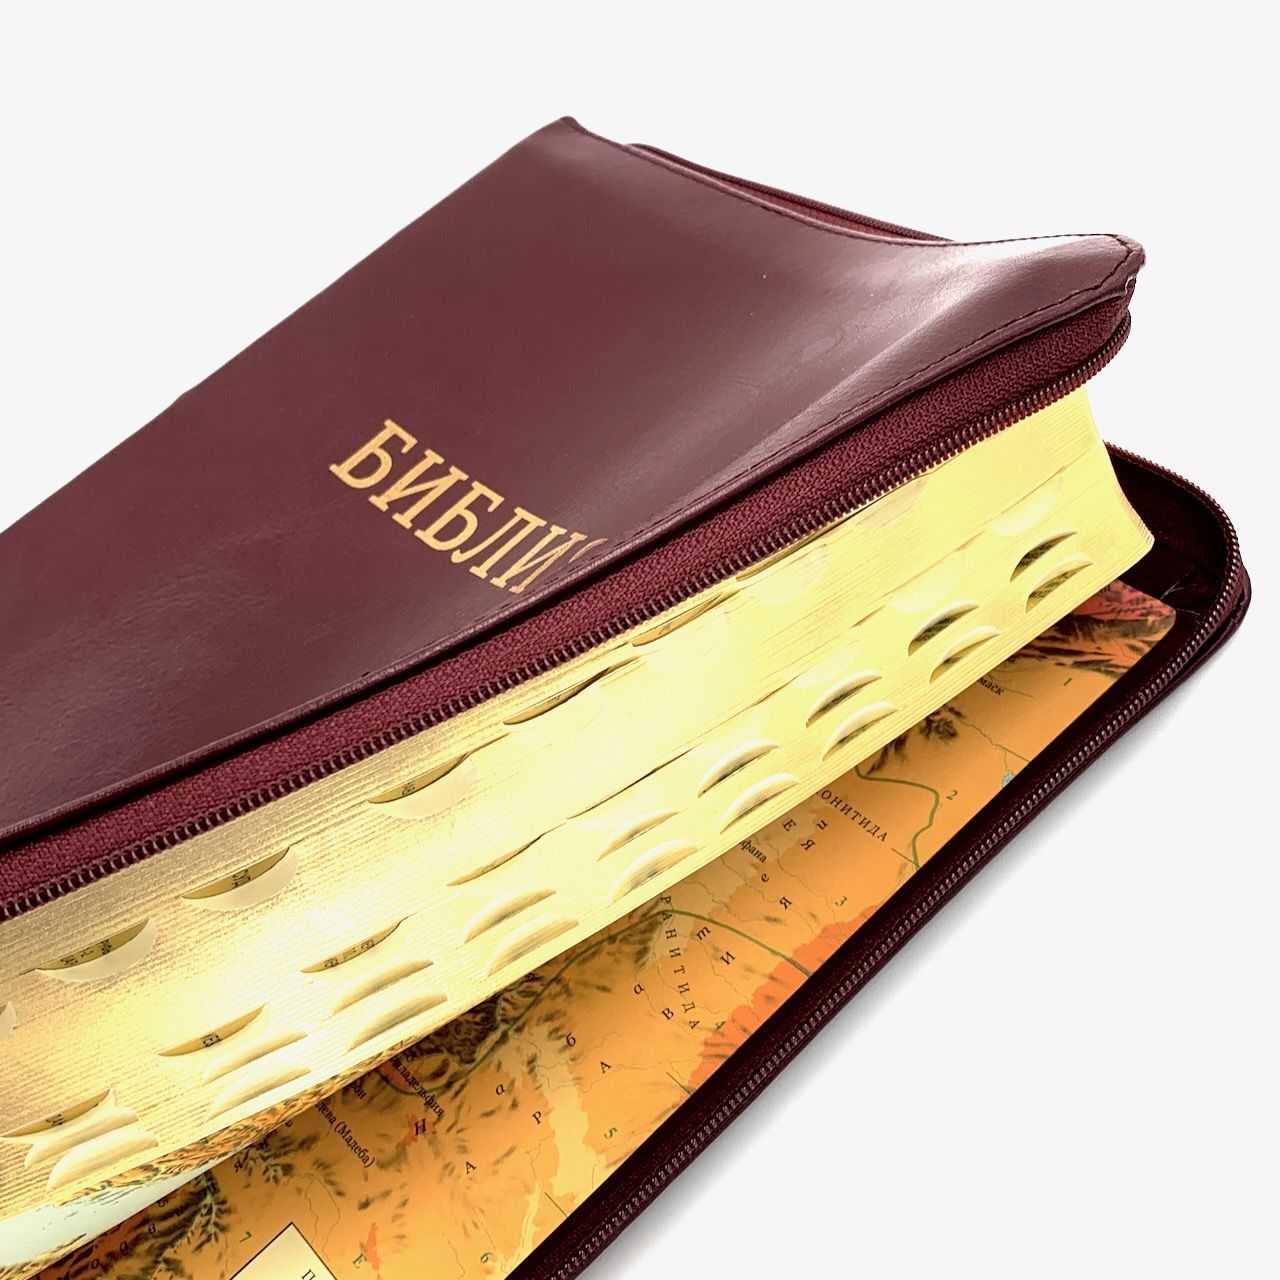 Библия 077zti формат  код 11763_26, переплет из натуральной кожи на молнии с индексами с ребрами на торце, цвет коричневый с оттенком бордо, золотой обрез, большой формат, 180*250 мм, крупный шрифт